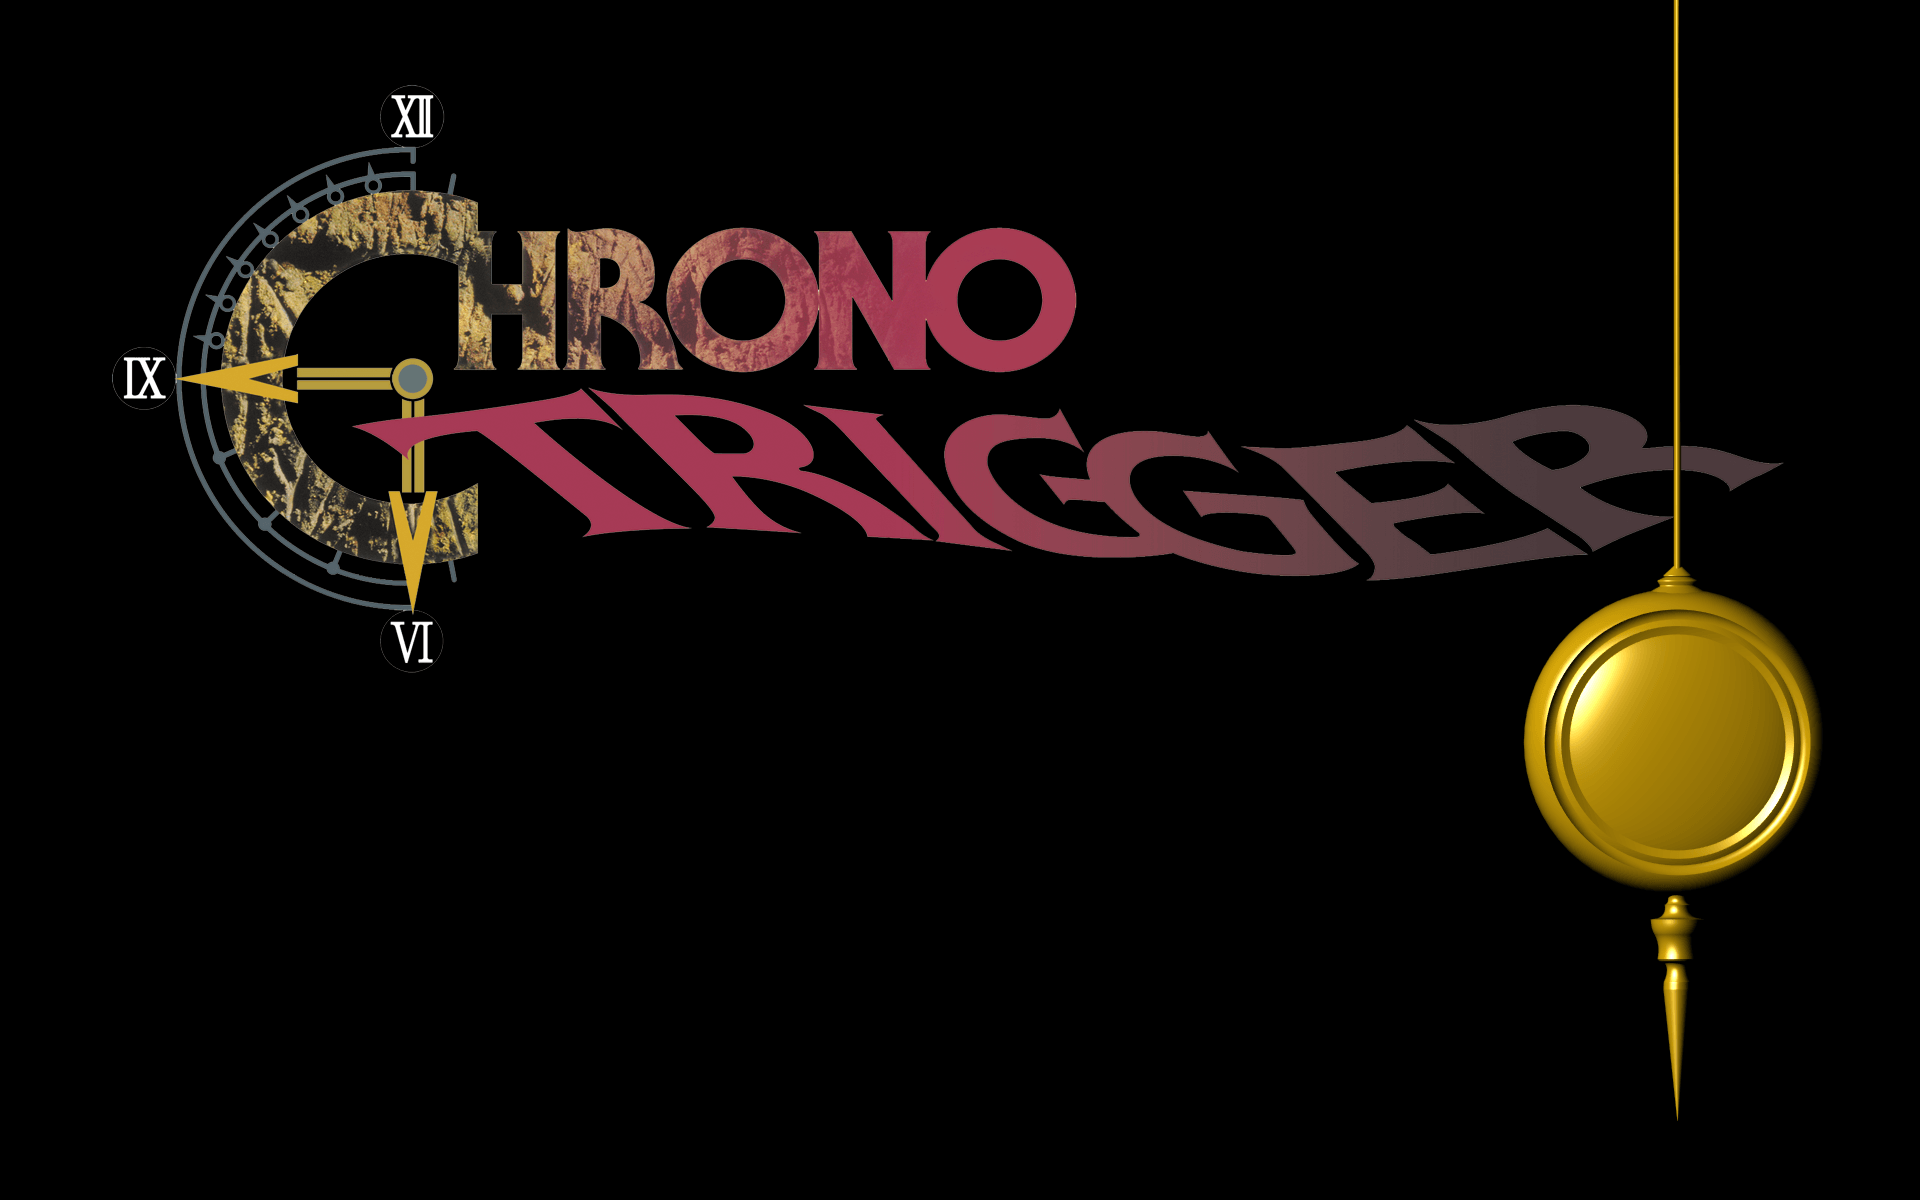 Chrono Trigger Wallpaper 1280x1024 Picture